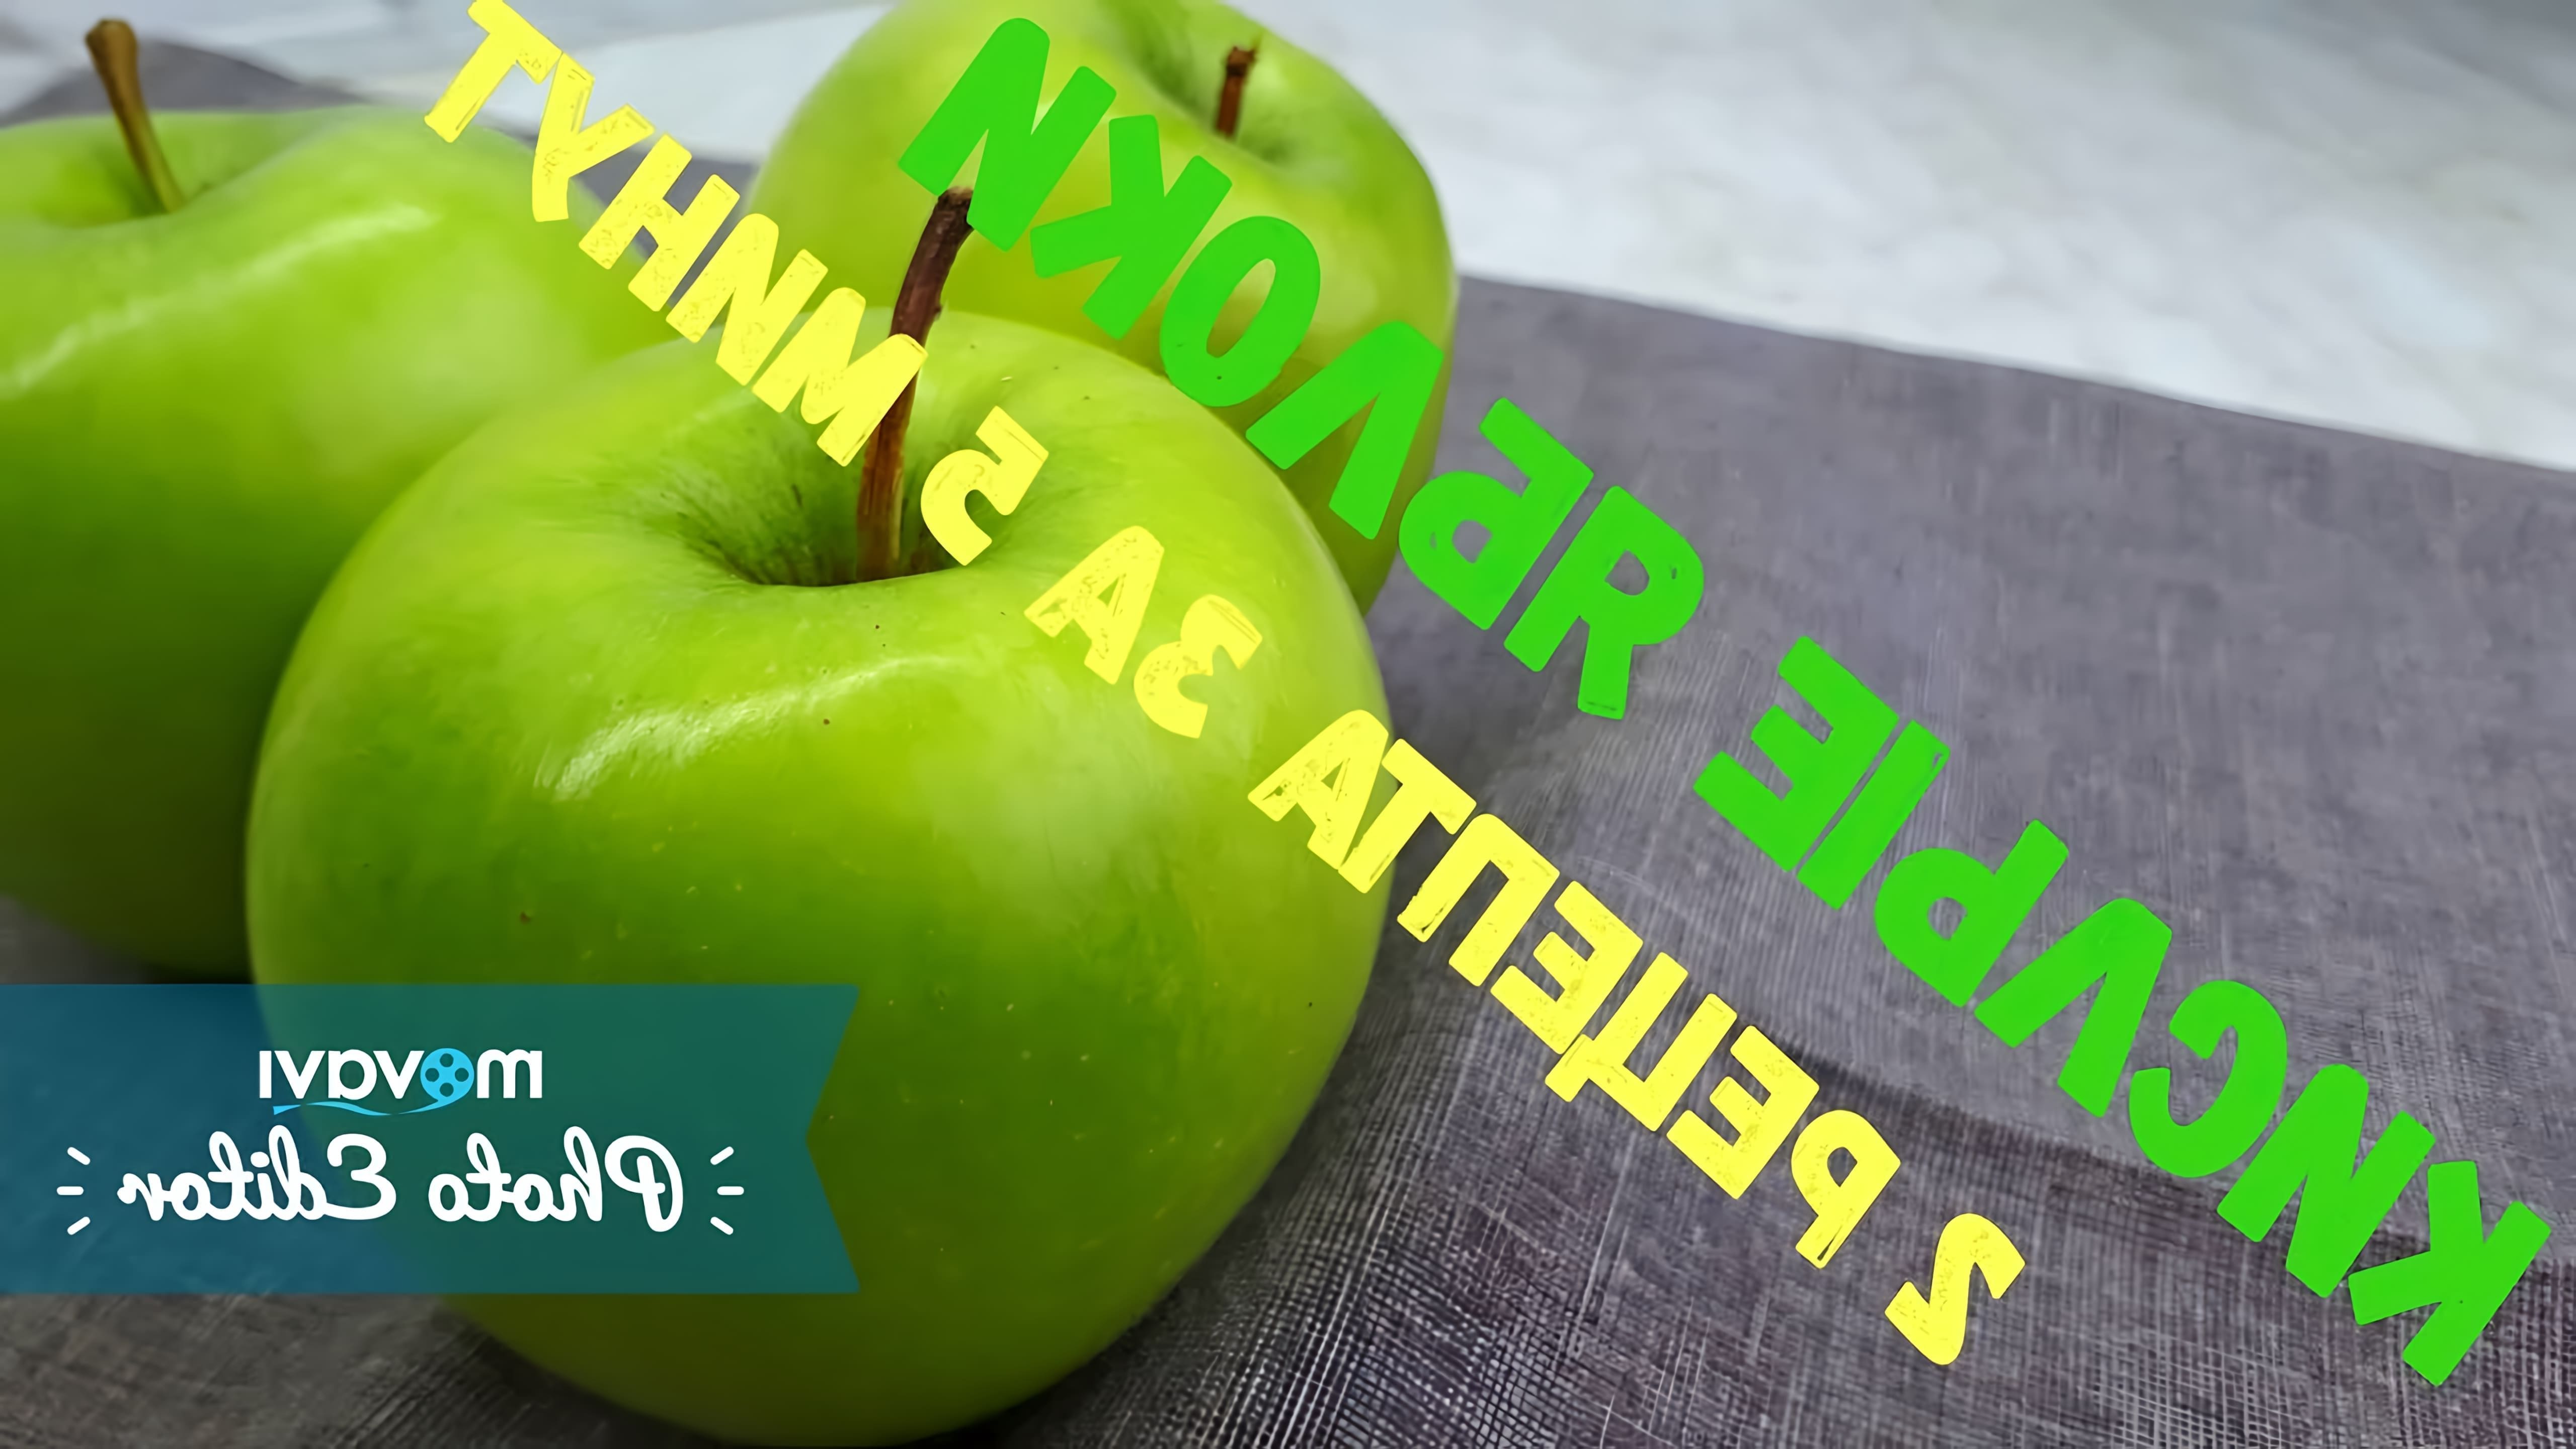 В этом видео демонстрируются два простых рецепта приготовления яблок